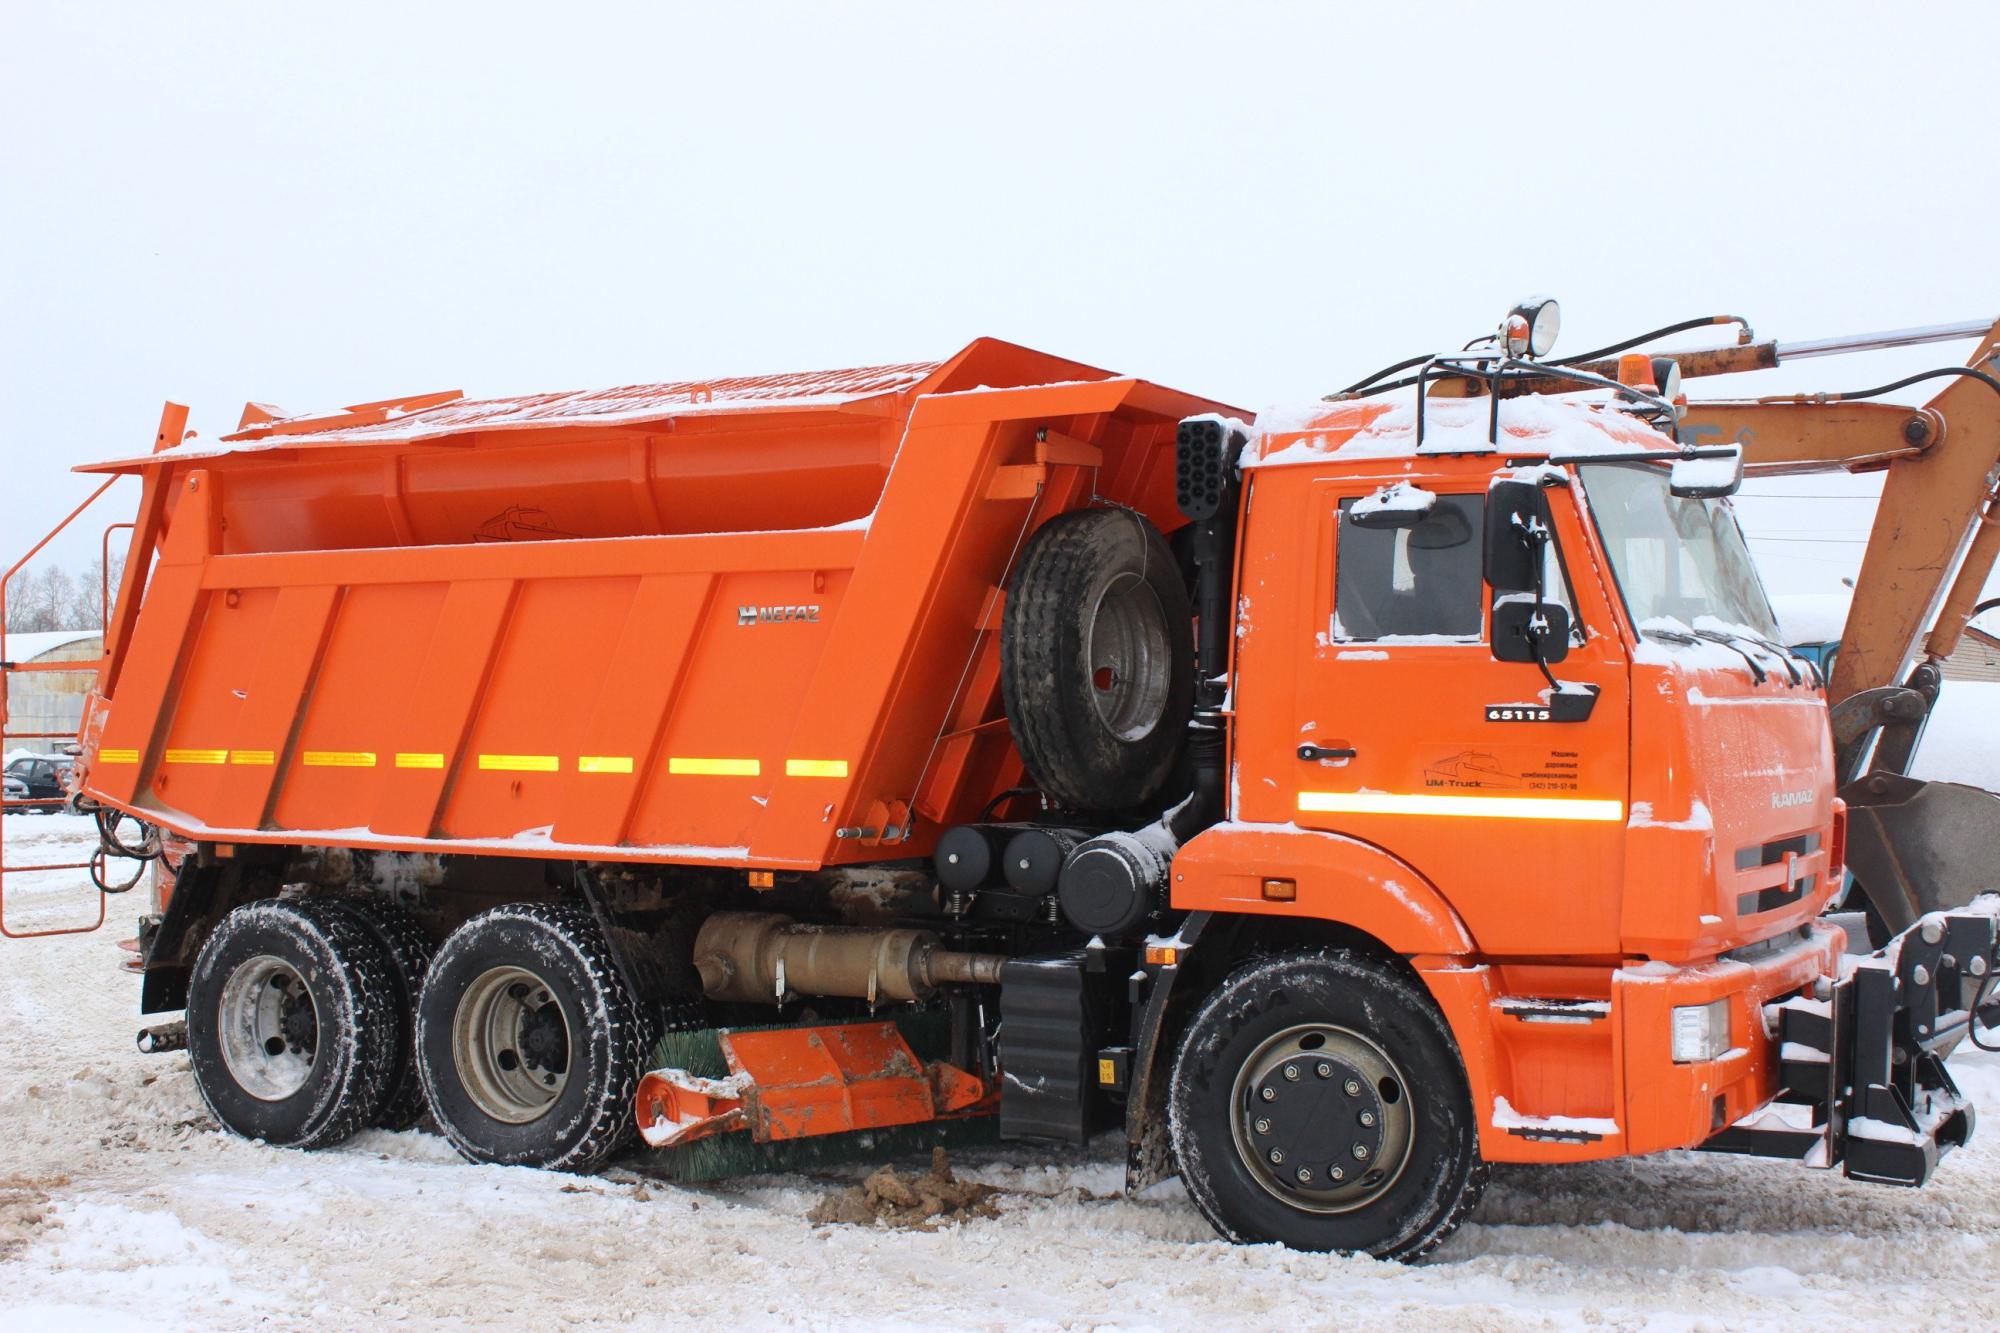 Пополнение автотранспорта «КАМАЗ» новой снегоуборочной спецтехникой - TLB-825, СНП-18 и КДМ-115001